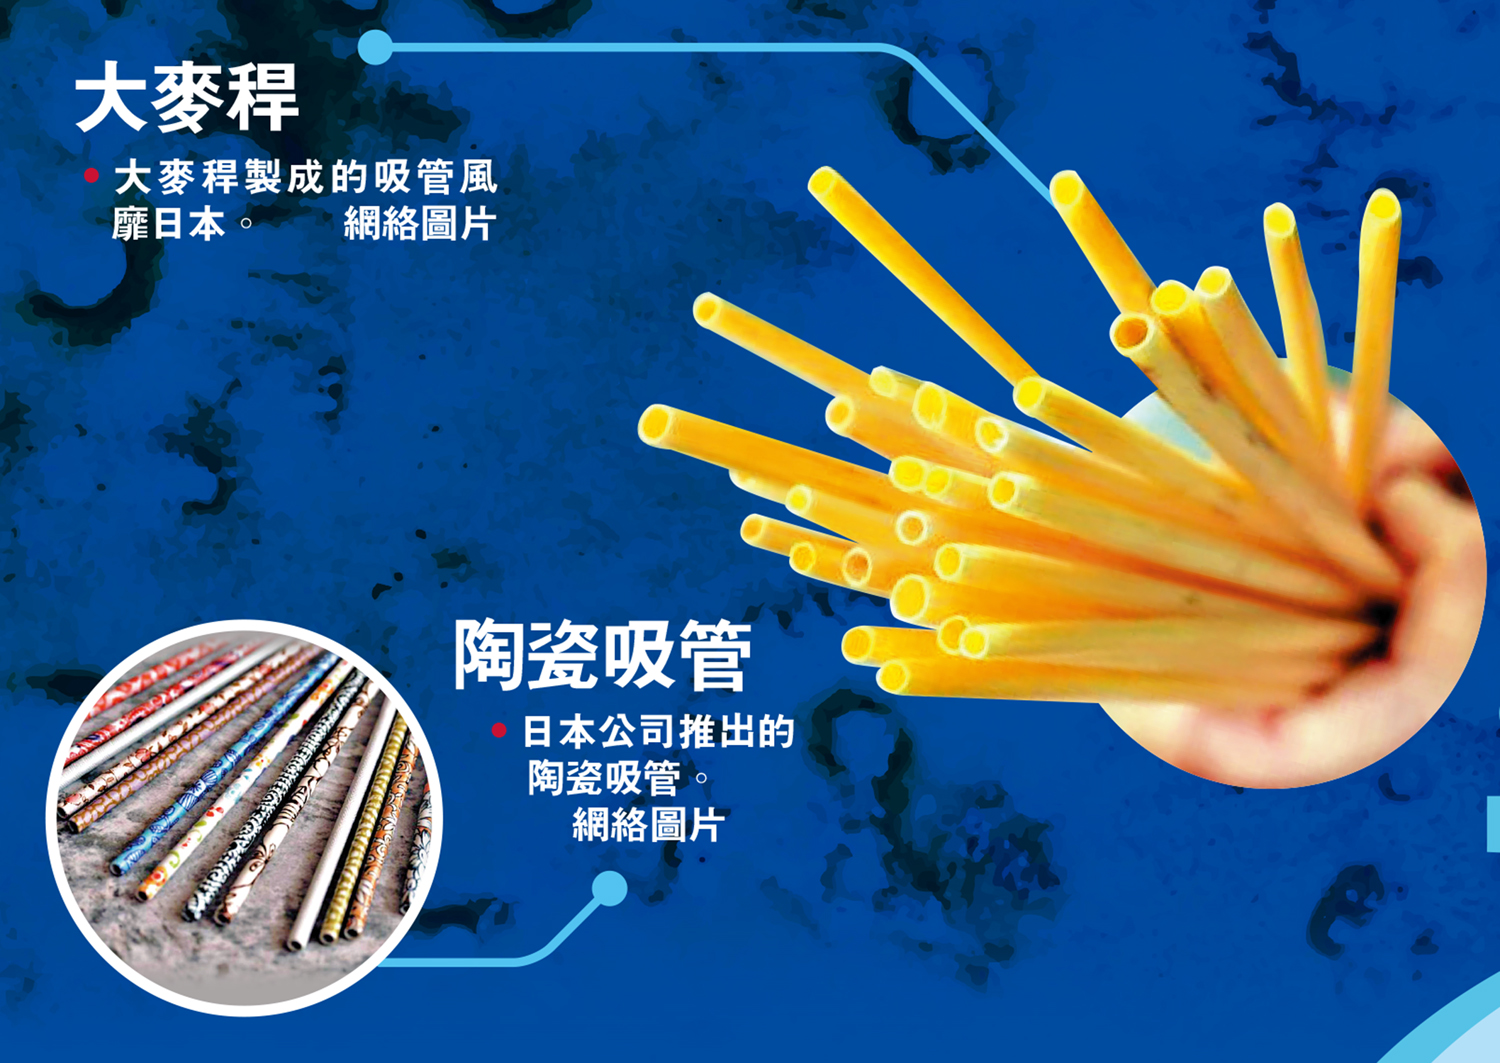 　　左圖：大麥稈/大麥稈製成的吸管風靡日本。右圖：陶瓷吸管/日本公司推出的陶瓷吸管。\網絡圖片